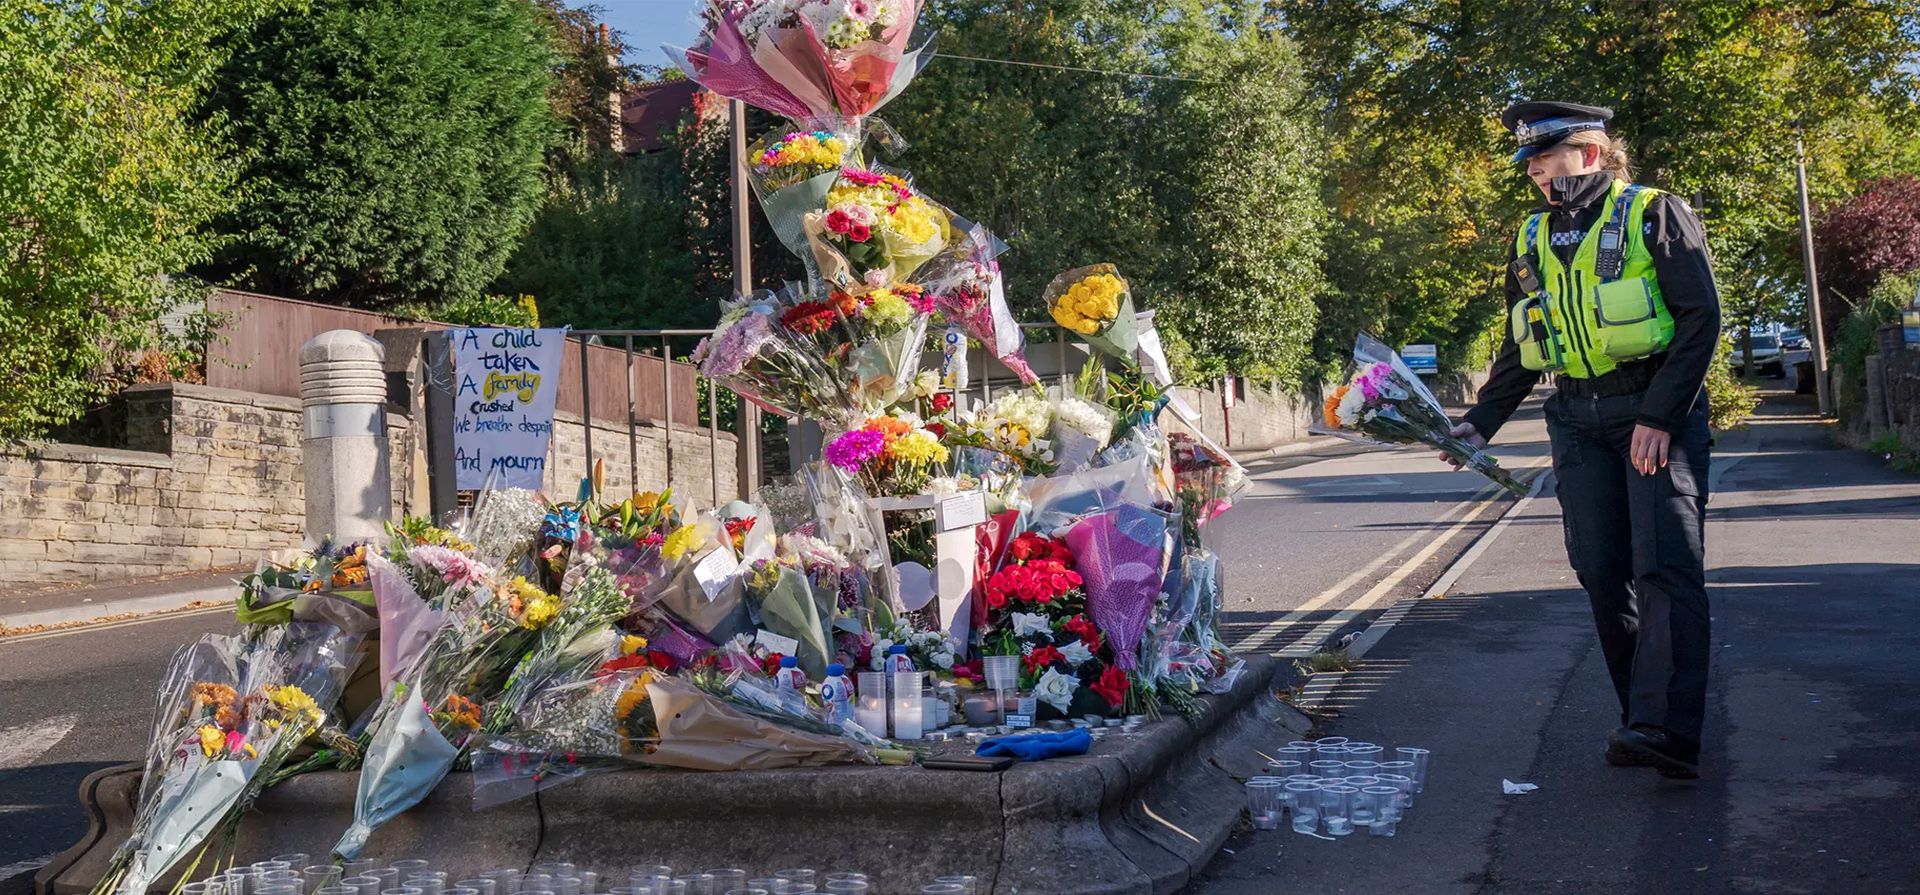 Un oficial de apoyo comunitario de la policía deposita un tributo floral en la escena en Woodhouse Hill donde el escolar de 15 años Khayri McLean fue apuñalado fatalmente frente a su escuela. El adolescente murió en el hospital después del ataque, Huddersfield, Inglaterra. Fotografía: Danny Lawson/PA